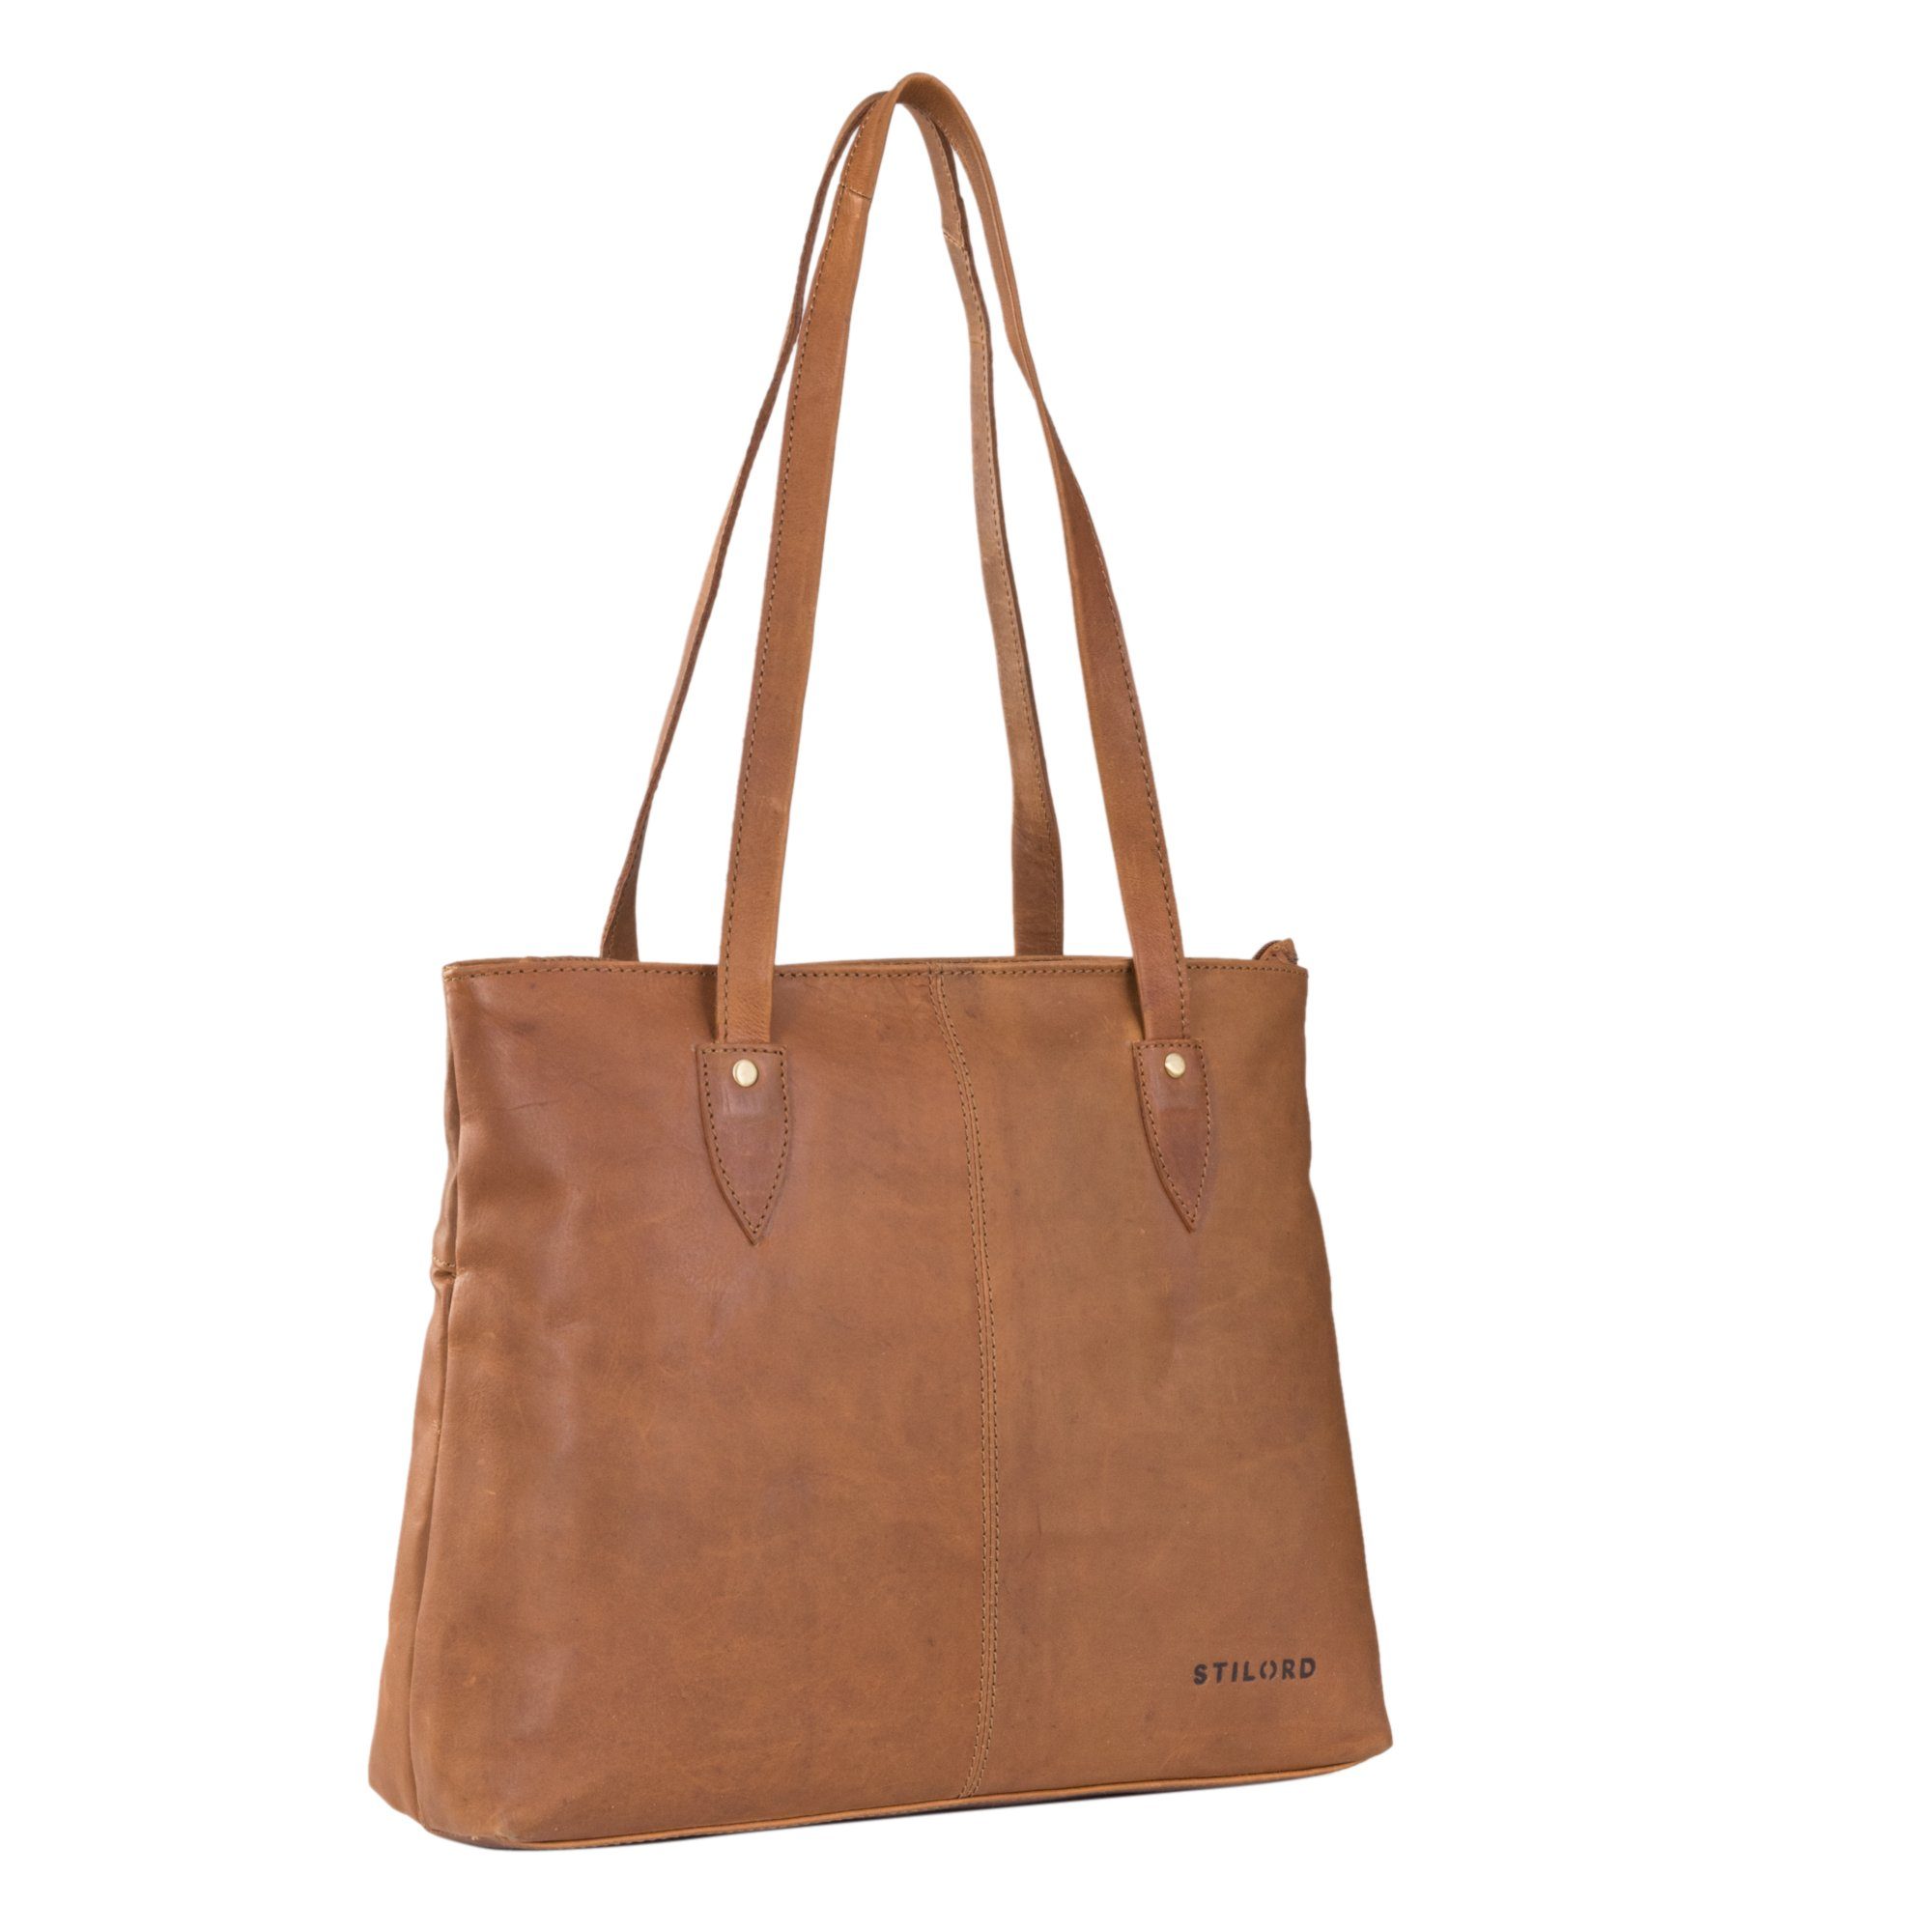 STILORD Handtasche "Brenda" Handtasche Damen Groß aus Leder cognac - braun | Handtaschen